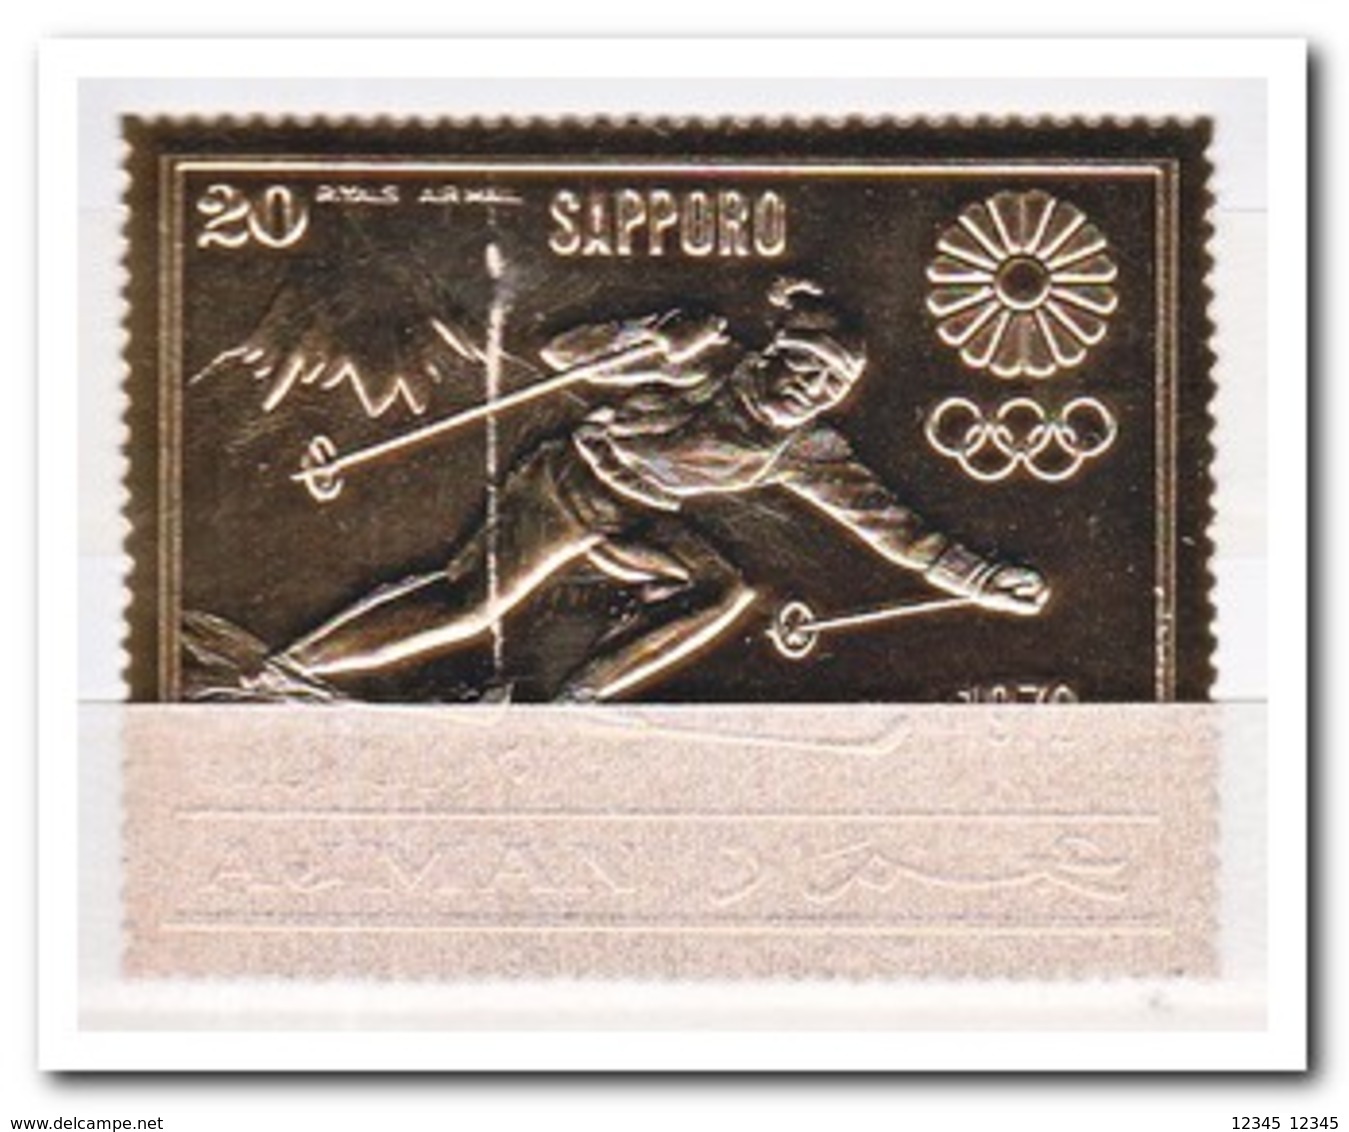 Ajman 1970, Postfris MNH, Olympic Winter Games - Ajman